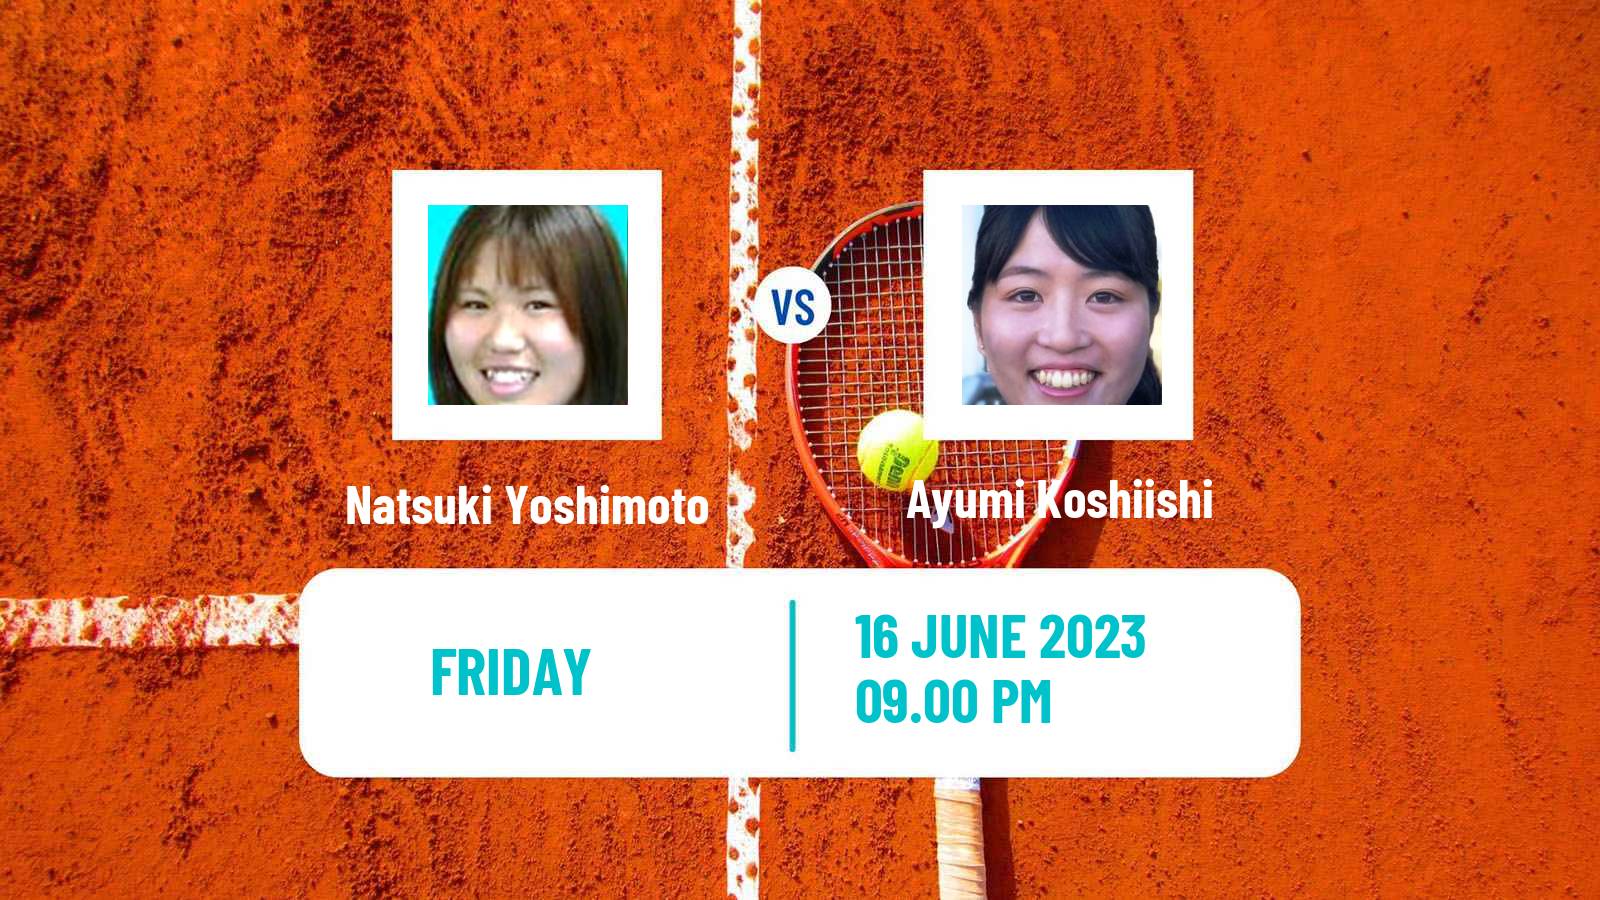 Tennis ITF W15 Kawaguchi Women Natsuki Yoshimoto - Ayumi Koshiishi